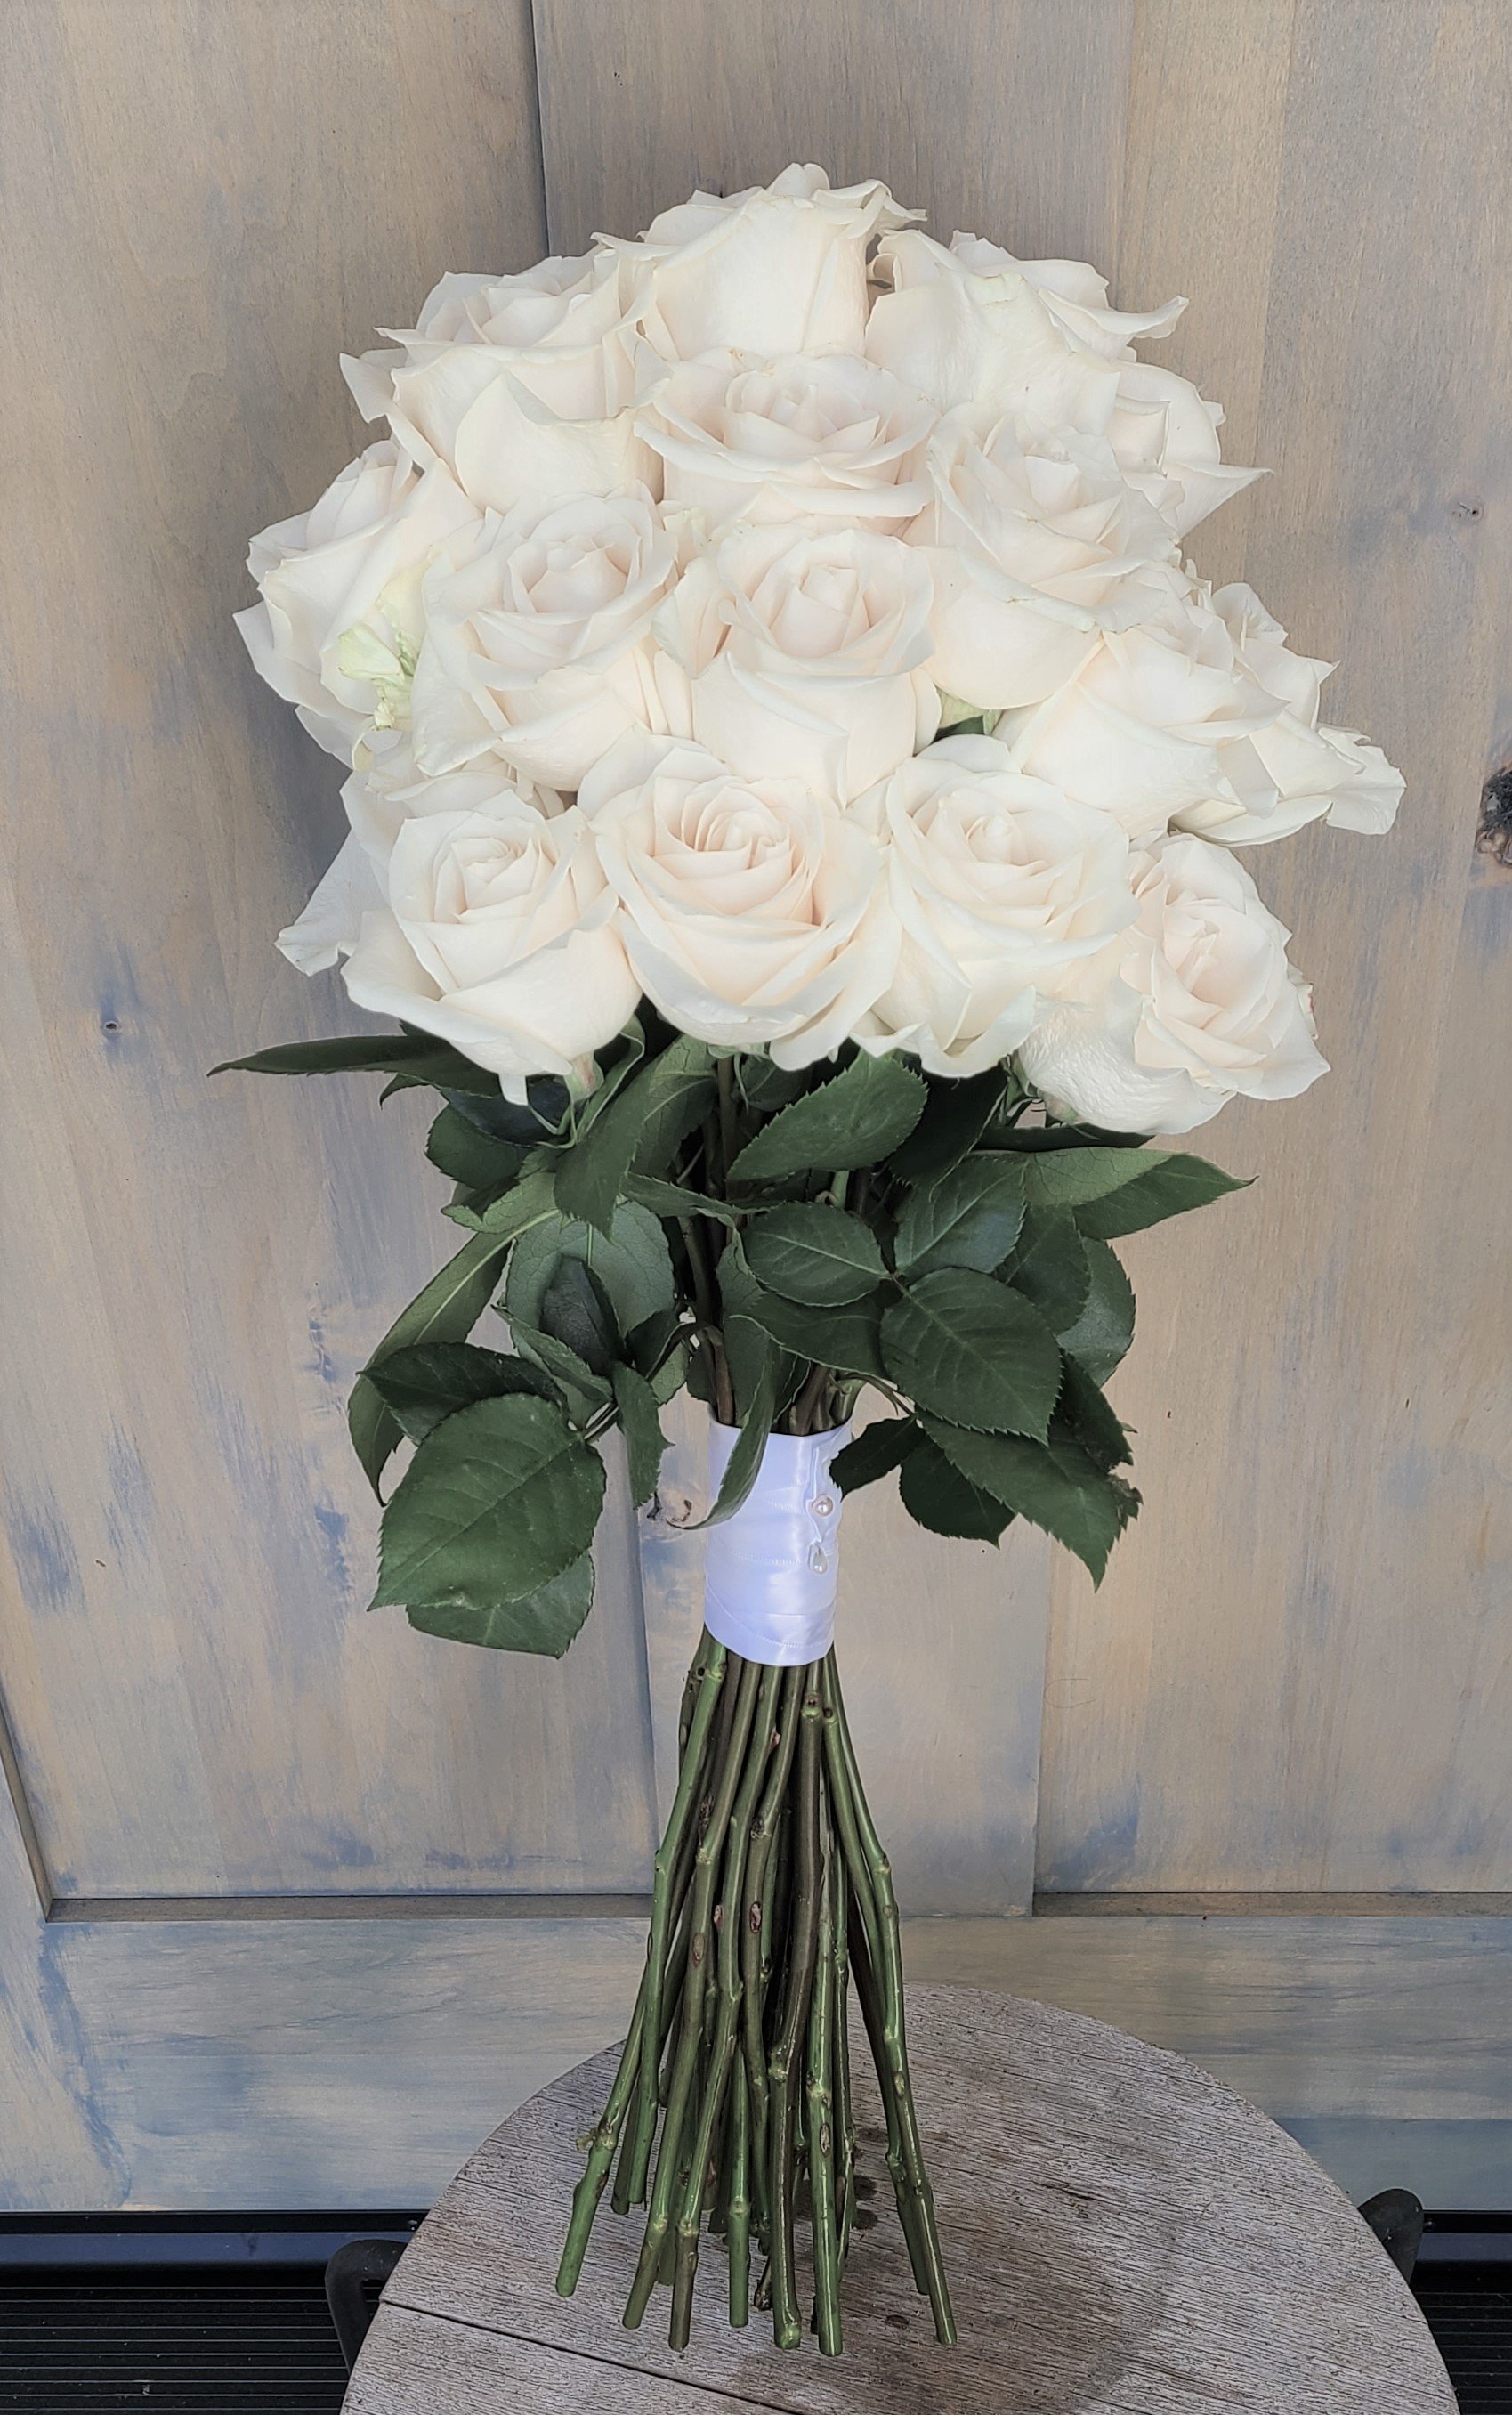 20220826_Bouquet long stem white rose.jpg